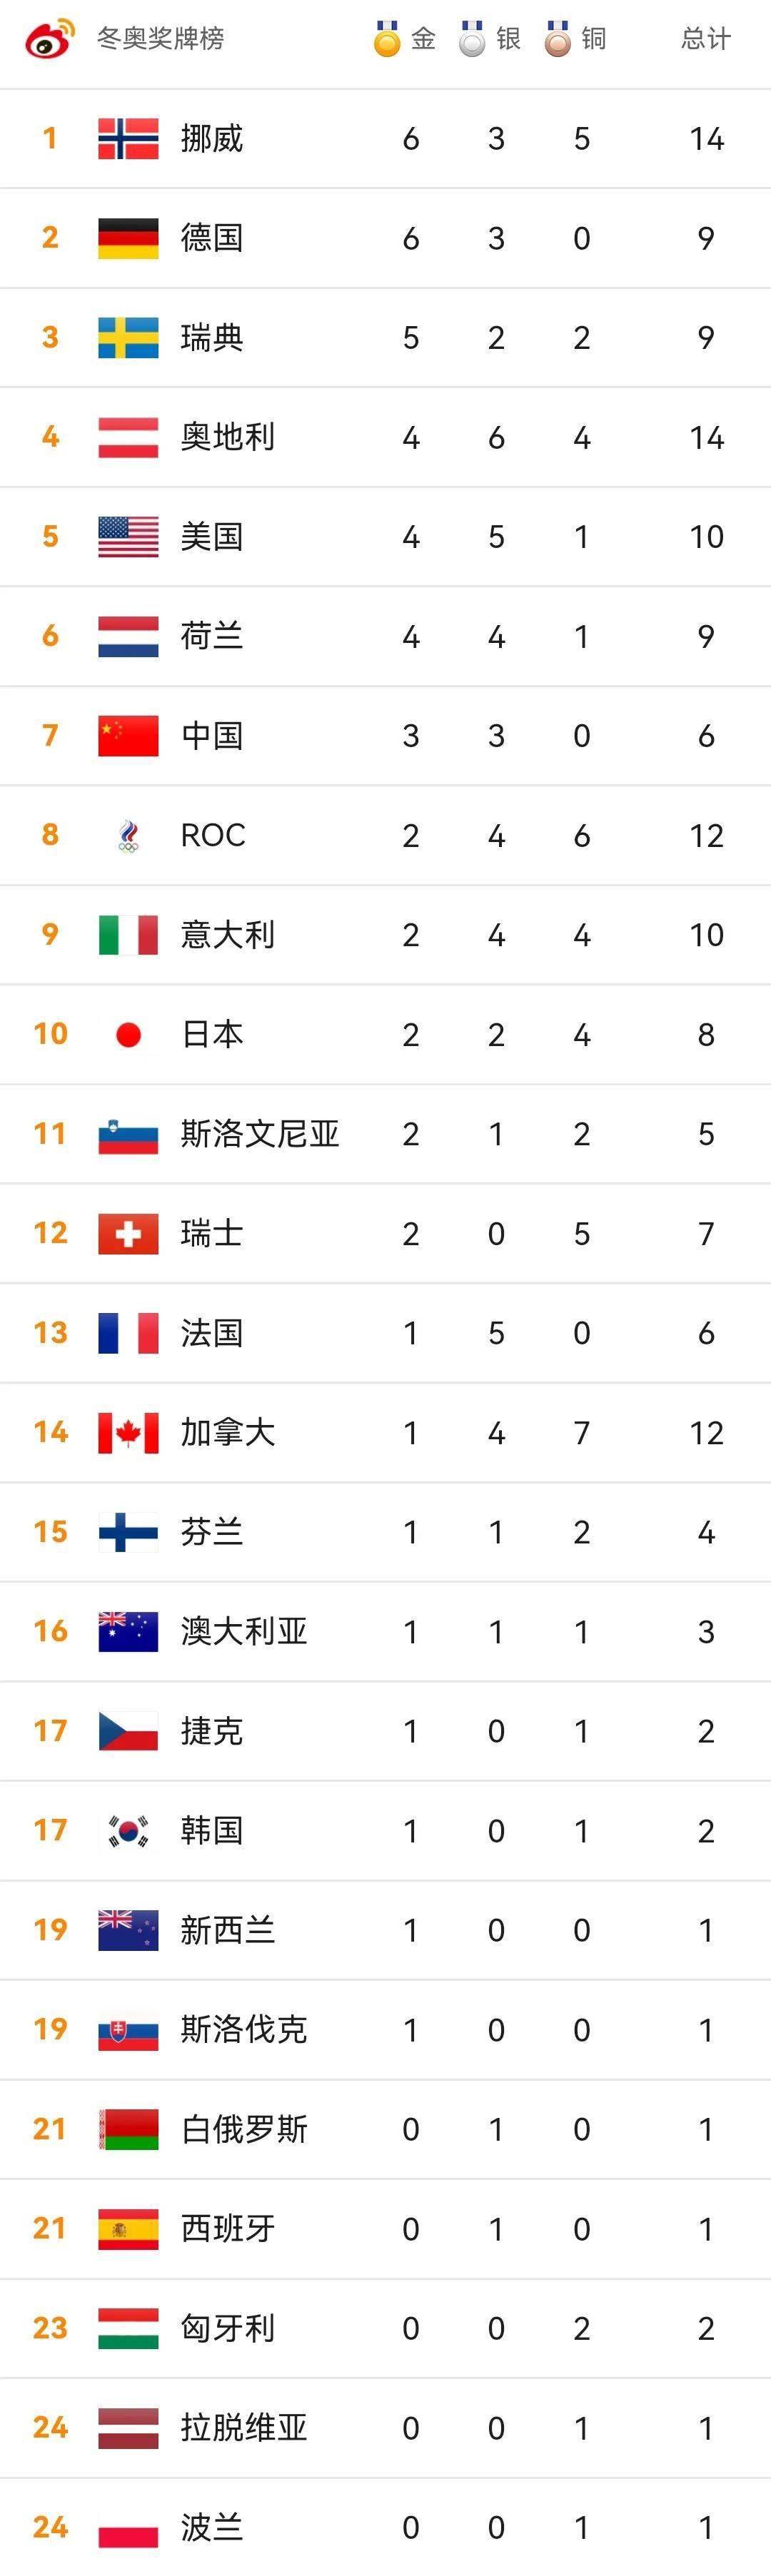 韩国冬奥会奖牌榜图片